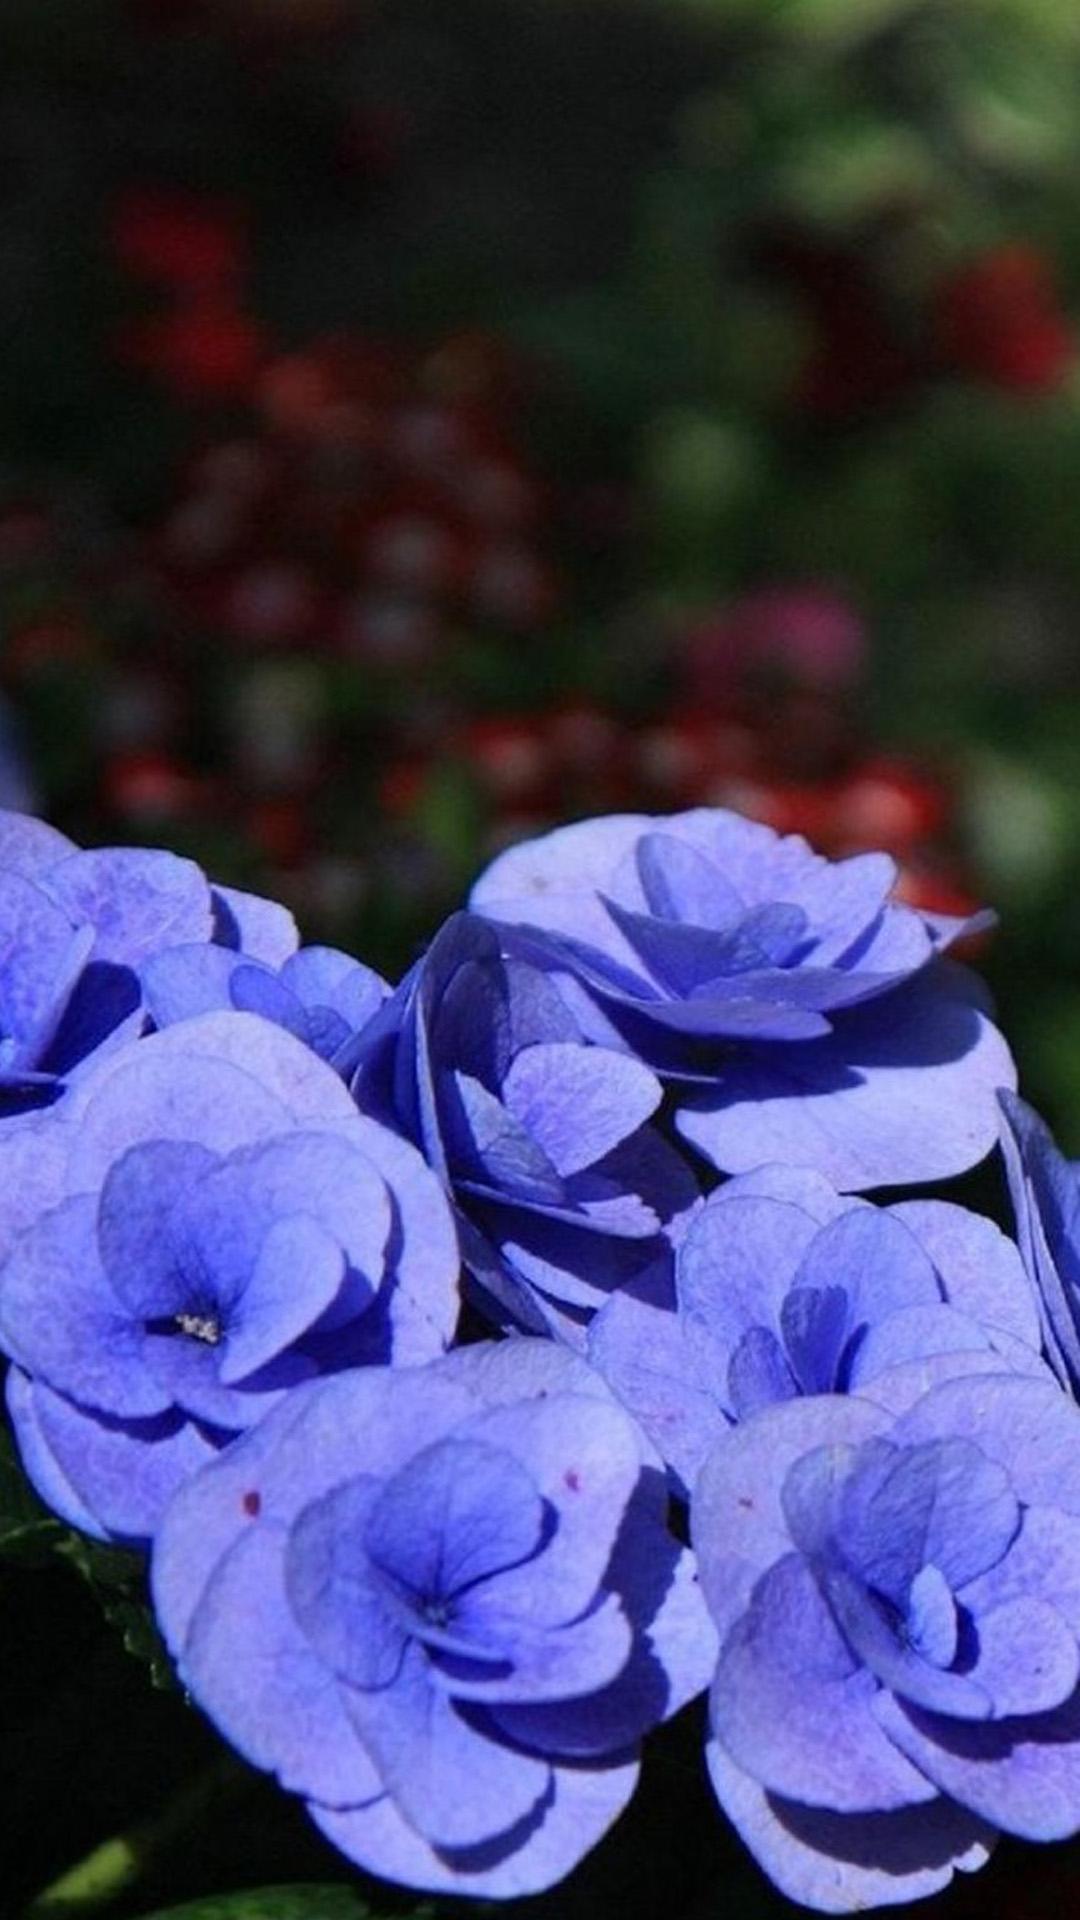 漂亮的紫色花朵-照片高清壁纸预览 | 10wallpaper.com